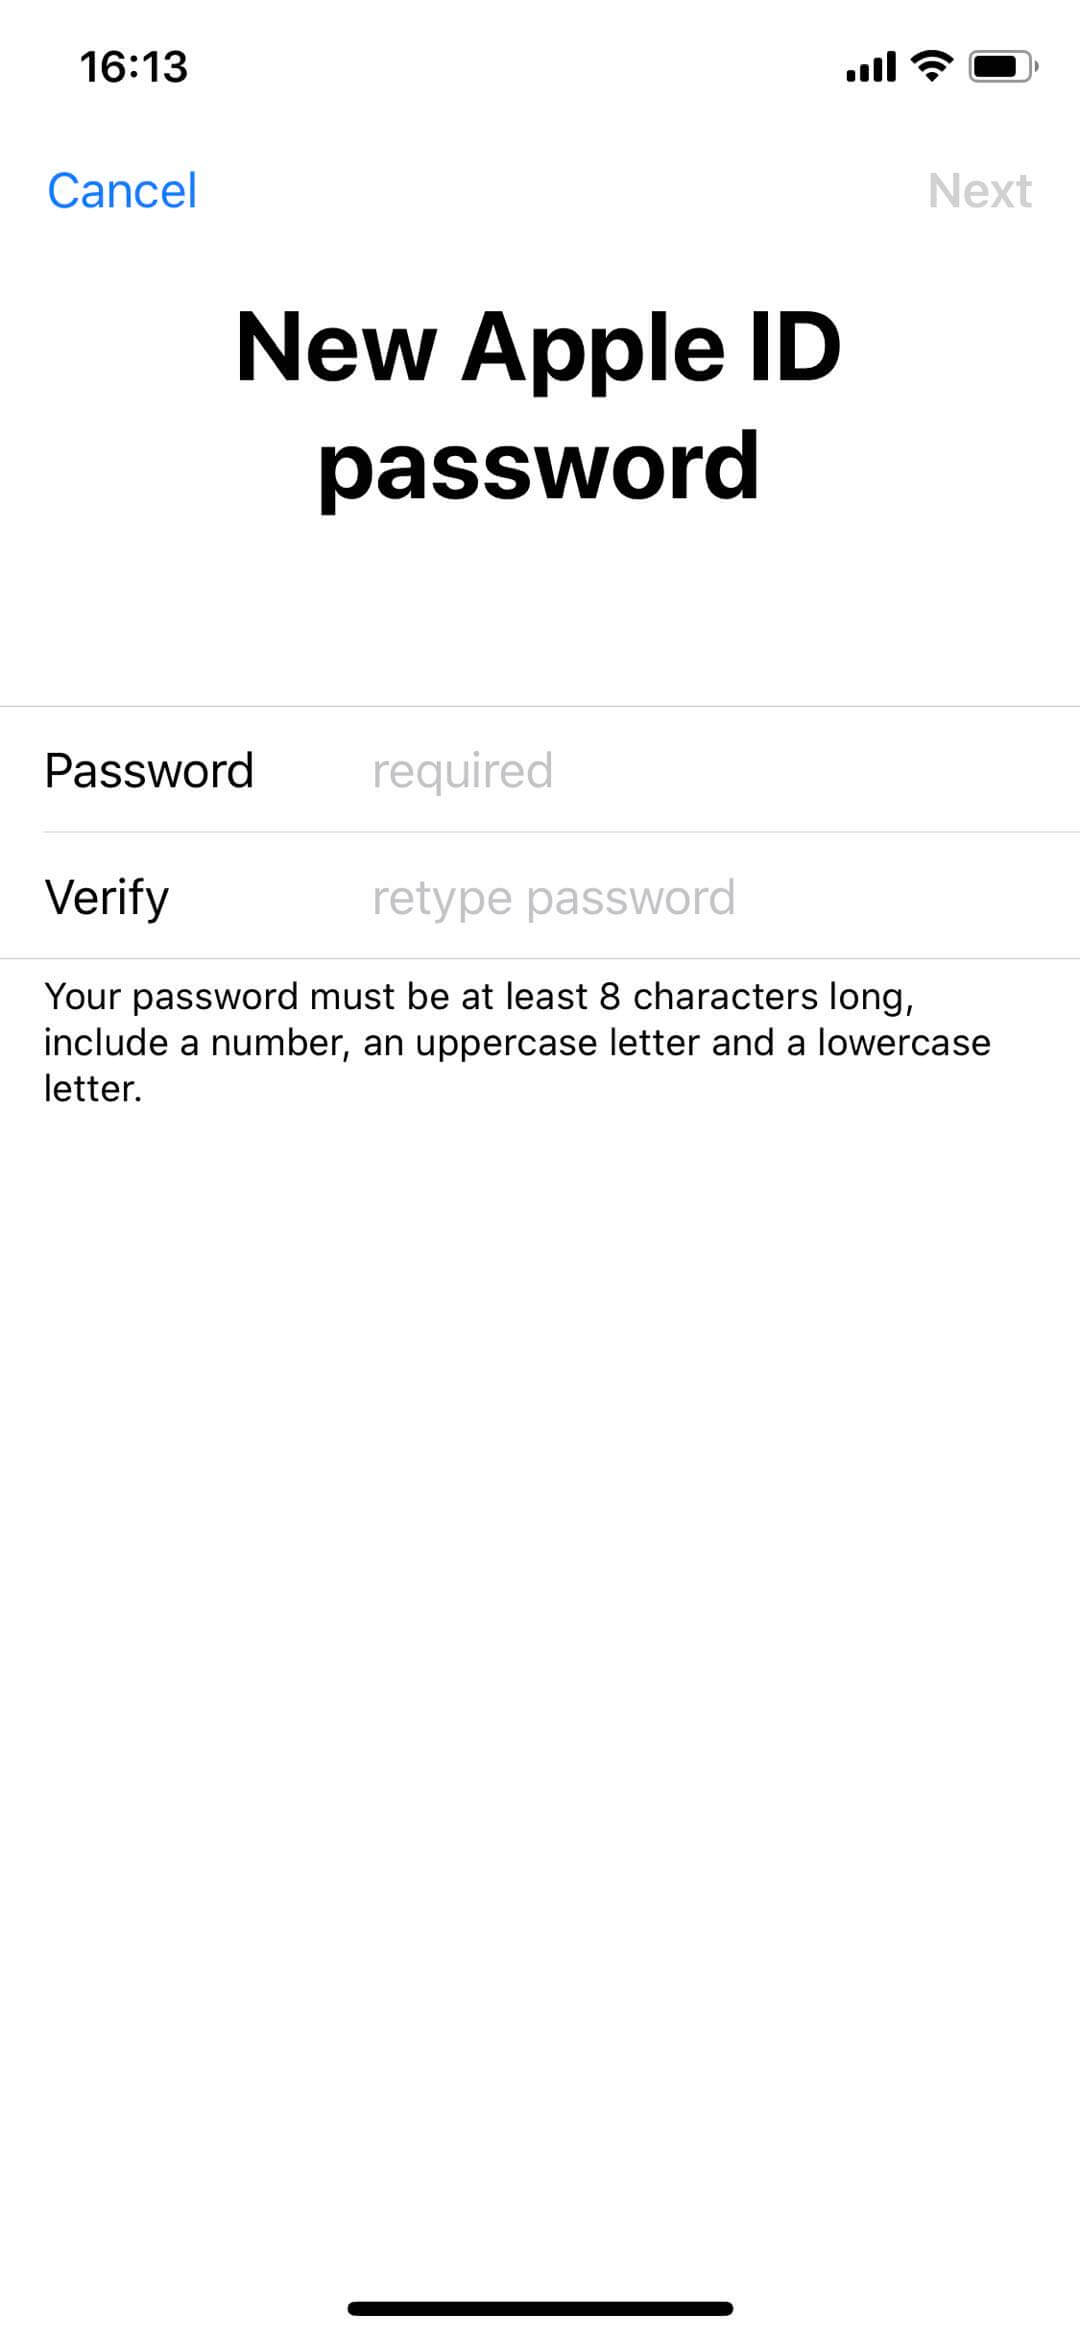 réinitialiser le mot de passe Apple ID